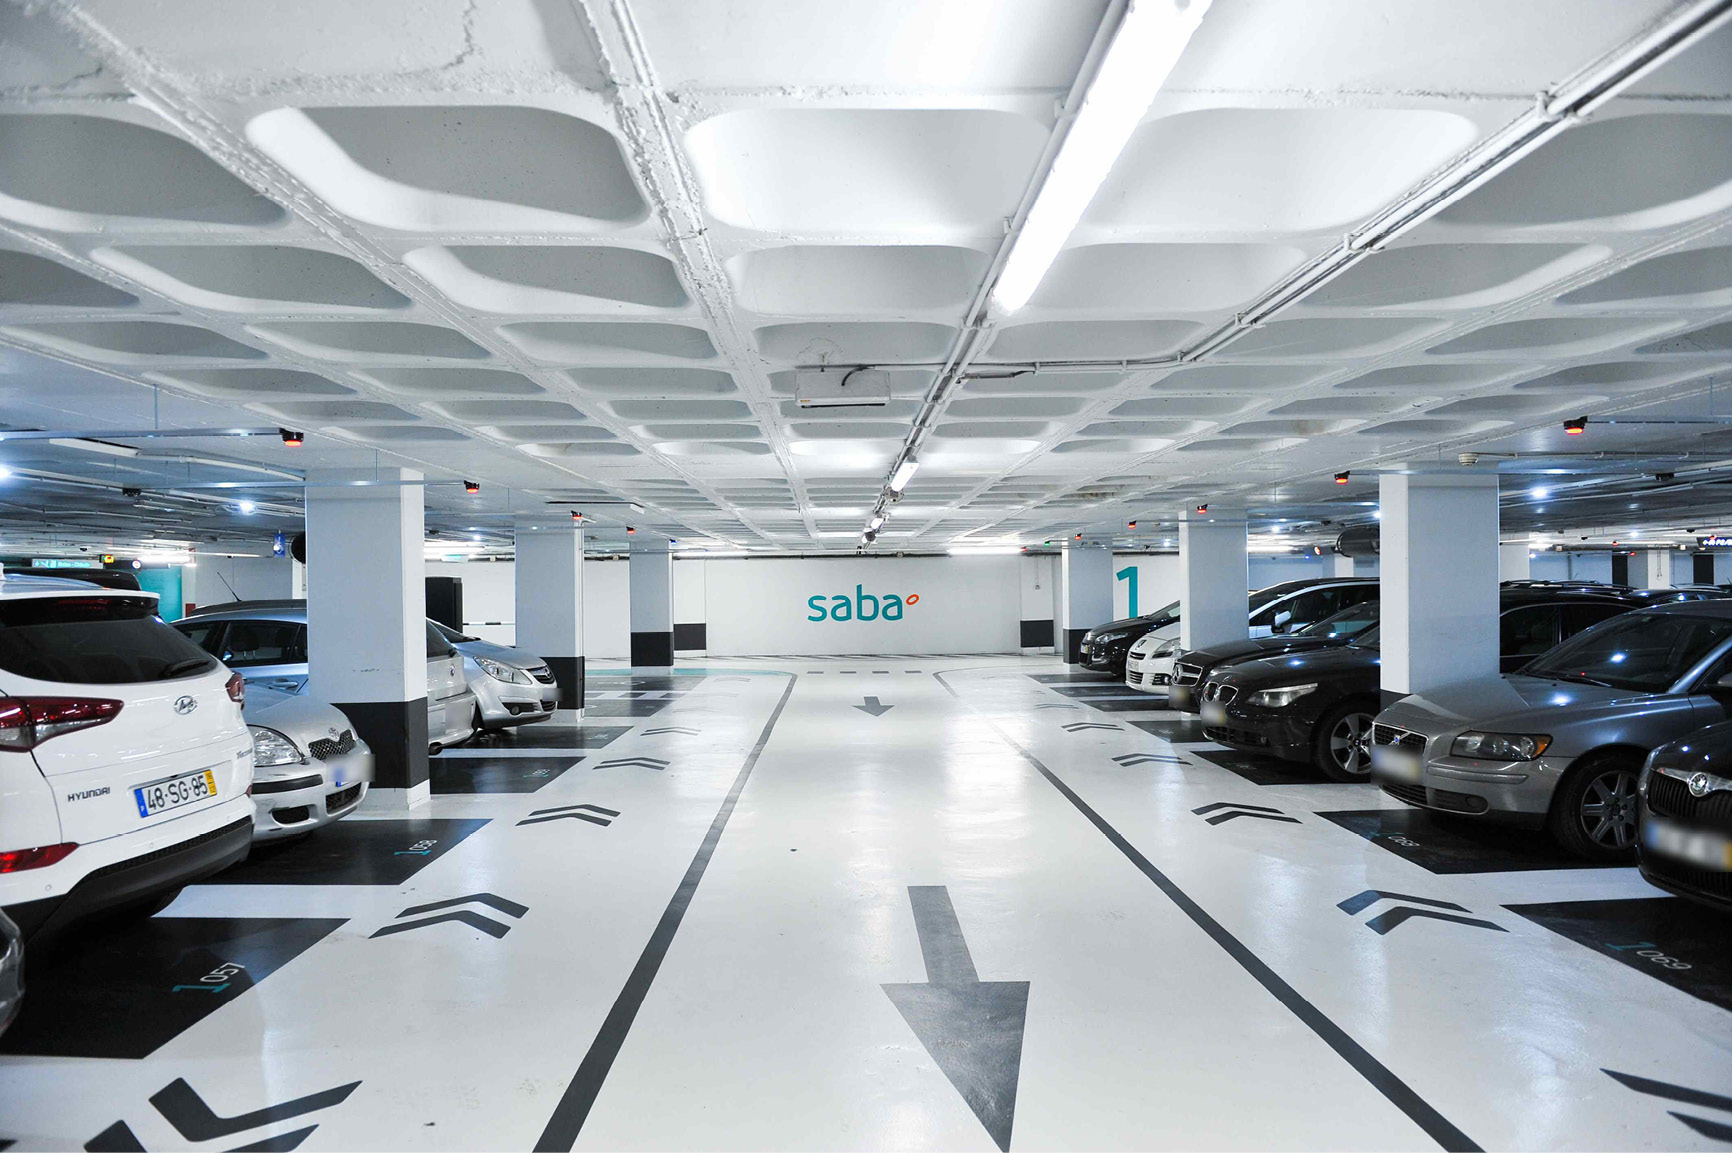 Tecs - Comprehensive building compliance services - Case Study - Saba Parking Services